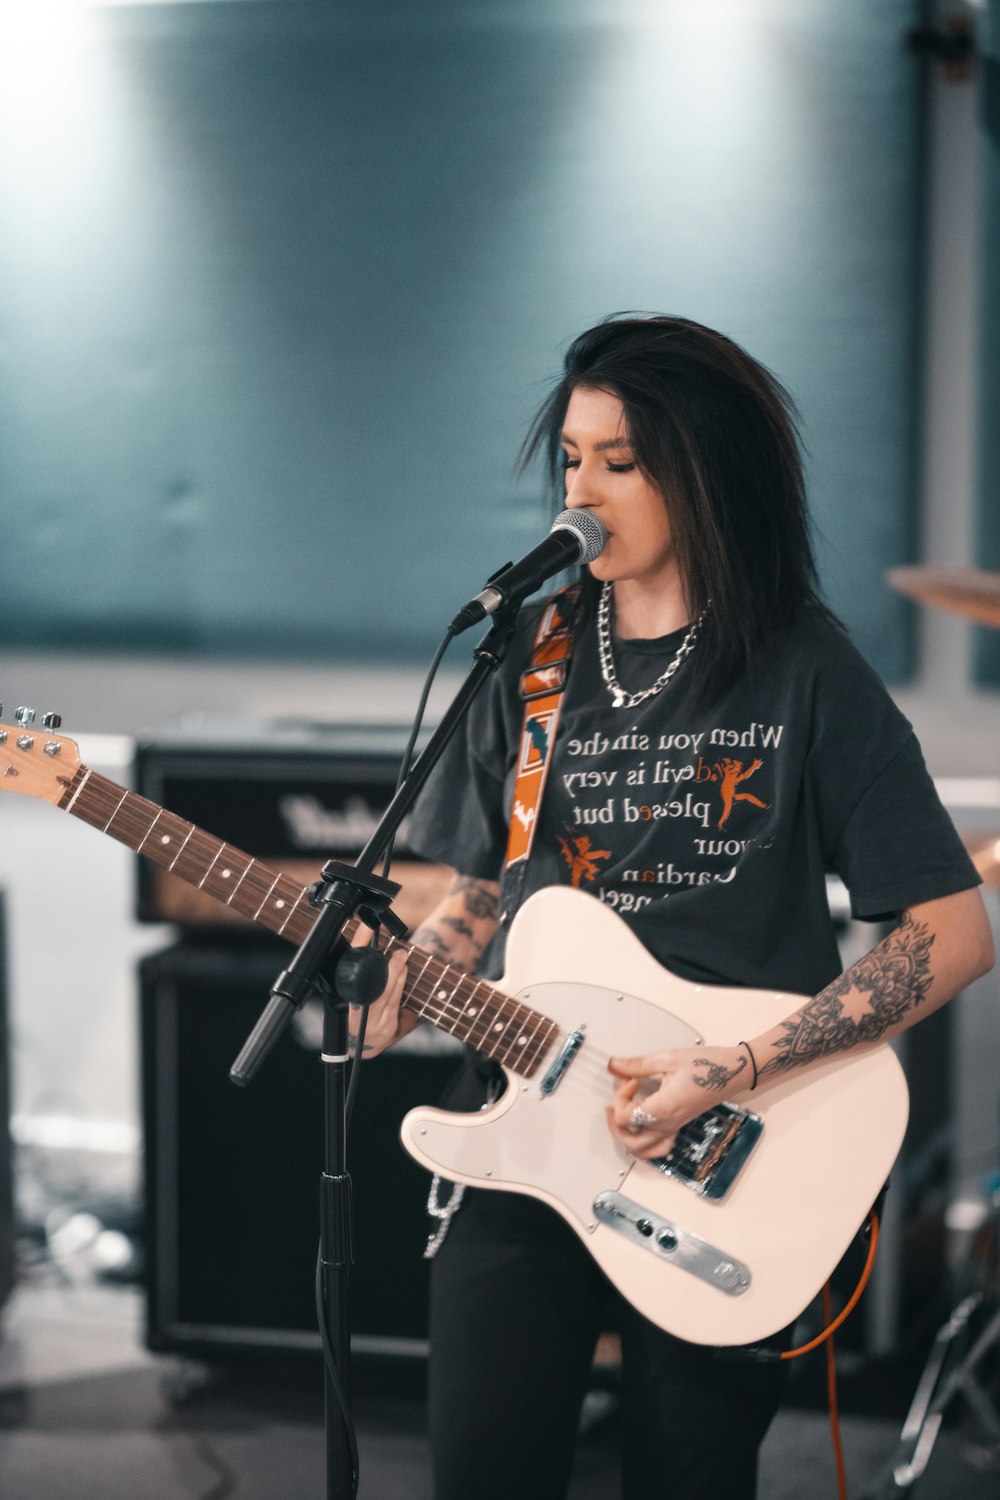 Mujer con camiseta negra tocando la guitarra eléctrica